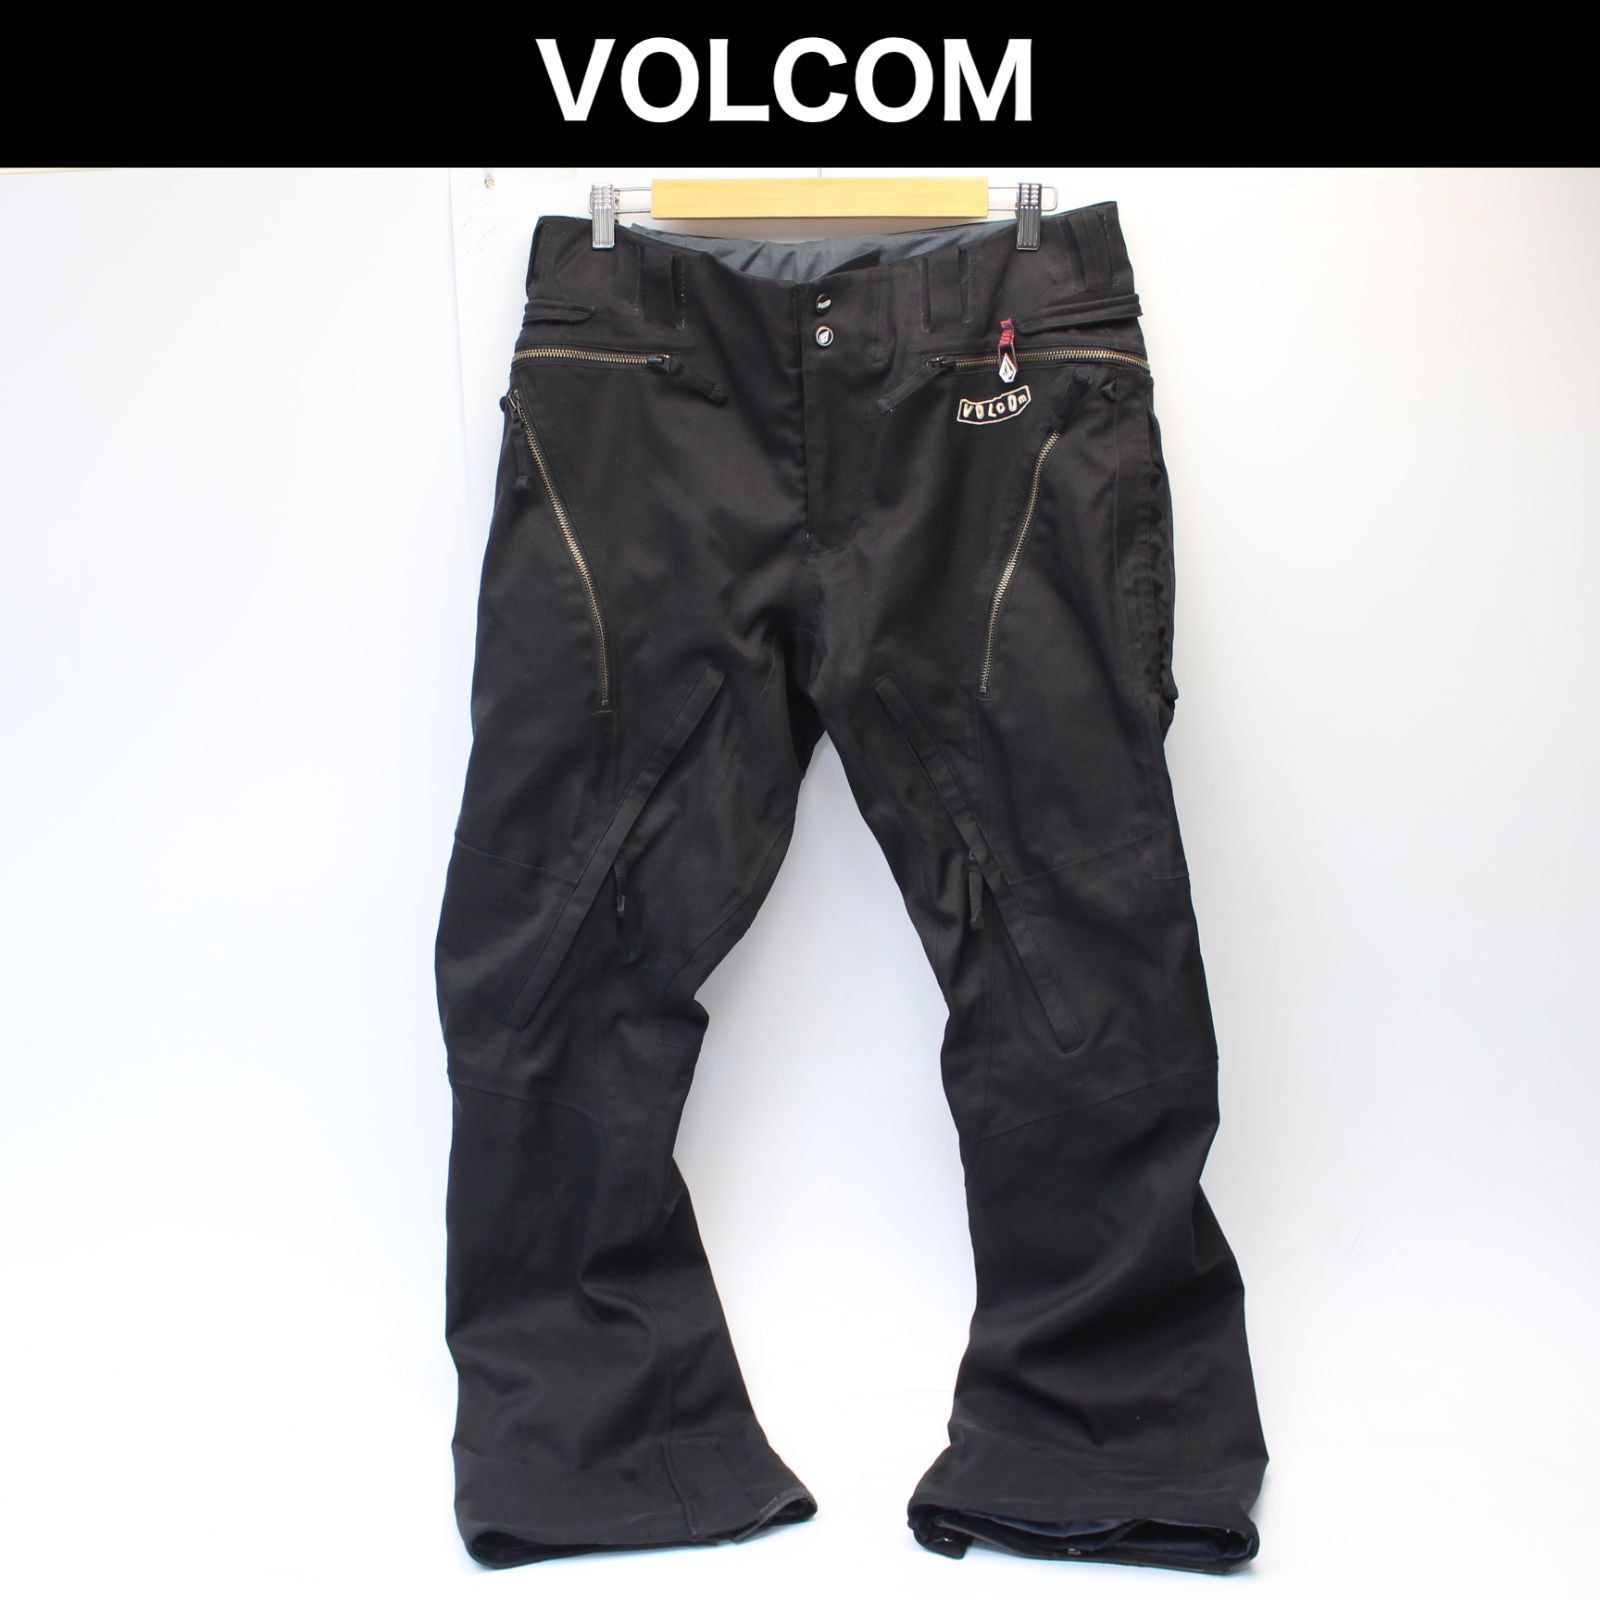 VOLCOM(ボルコム) メンズ CARBON PANT パンツ ブラック 黒 スノボ